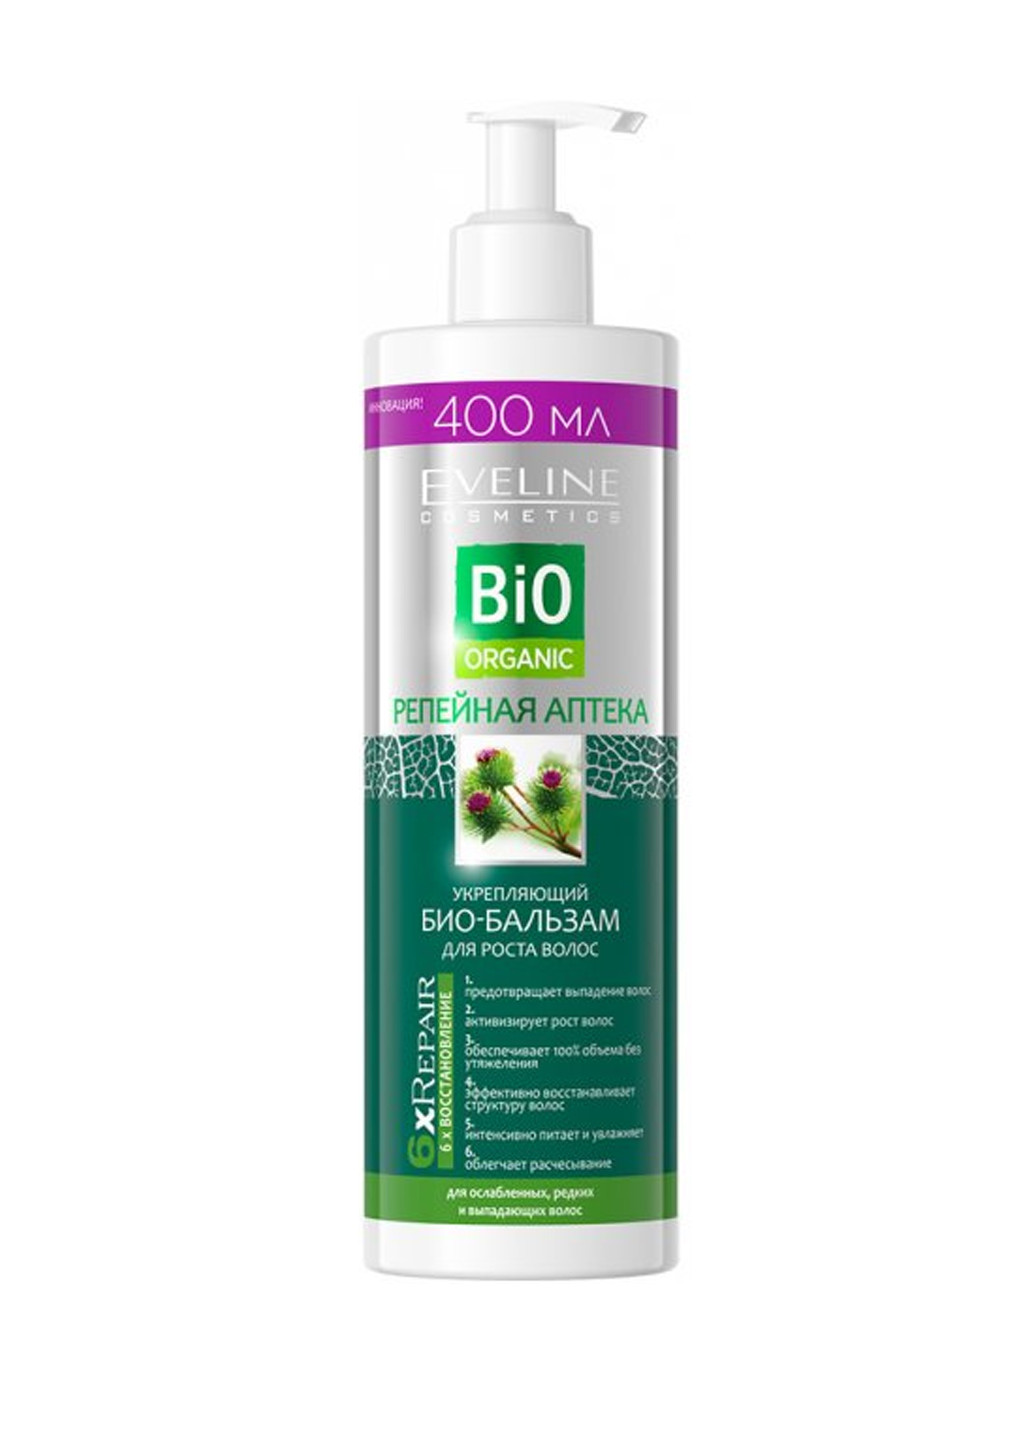 Репейная аптека - укрепляющий био-бальзам для роста волос серии Bio ORGANIC, 400 мл Eveline Cosmetics 5903416033349 (257275692)